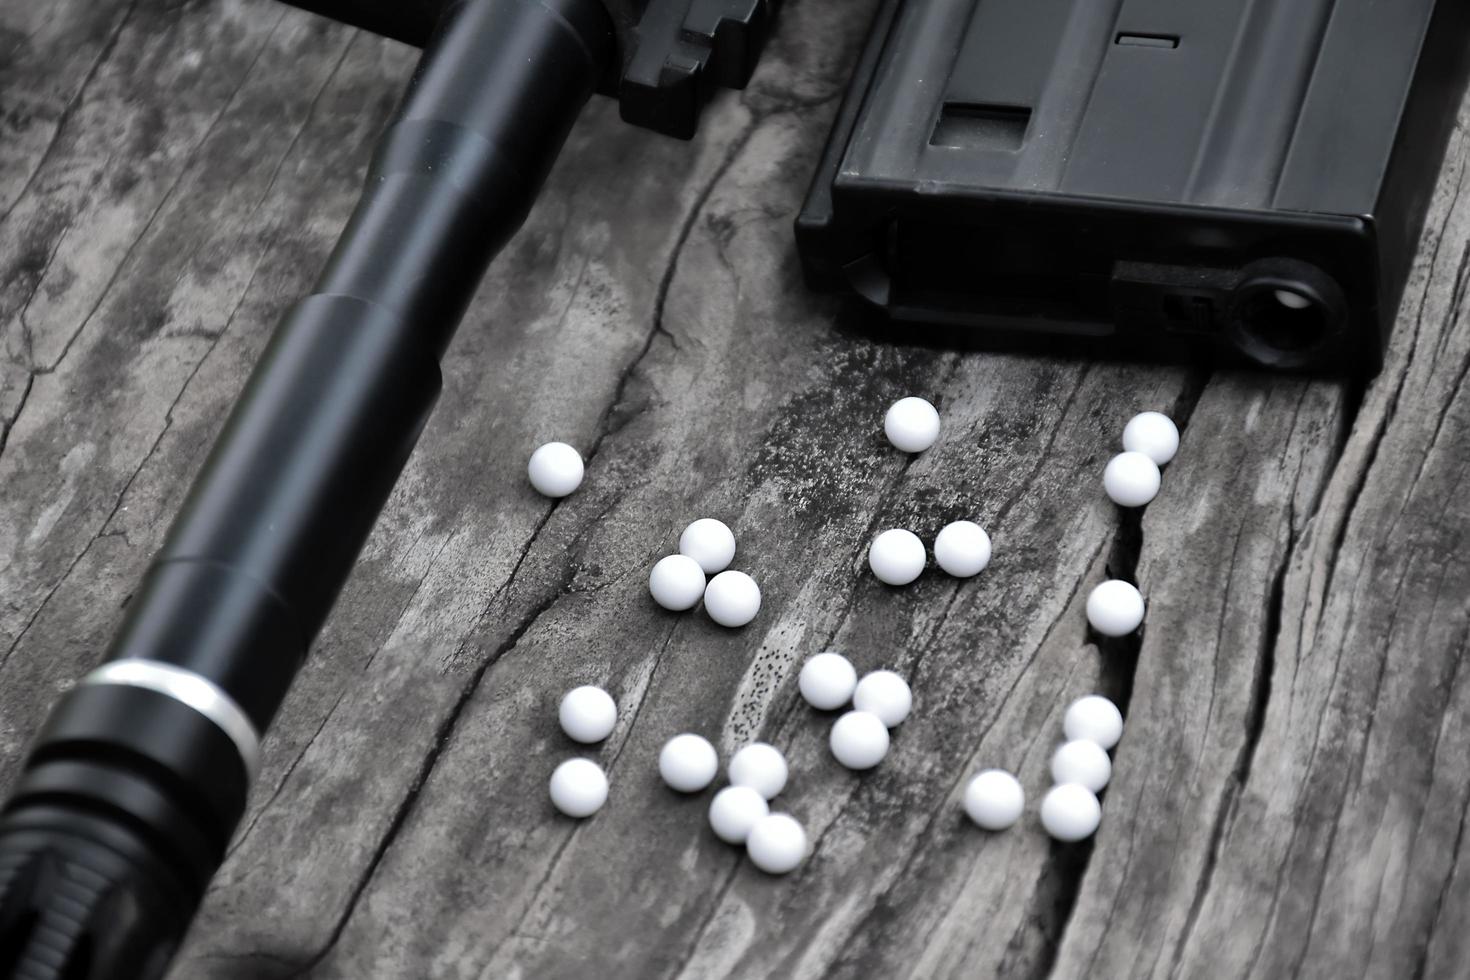 primer plano de balas de plástico blanco de pistola airsoft o pistola bb en suelo de madera, enfoque suave y selectivo en balas blancas. foto